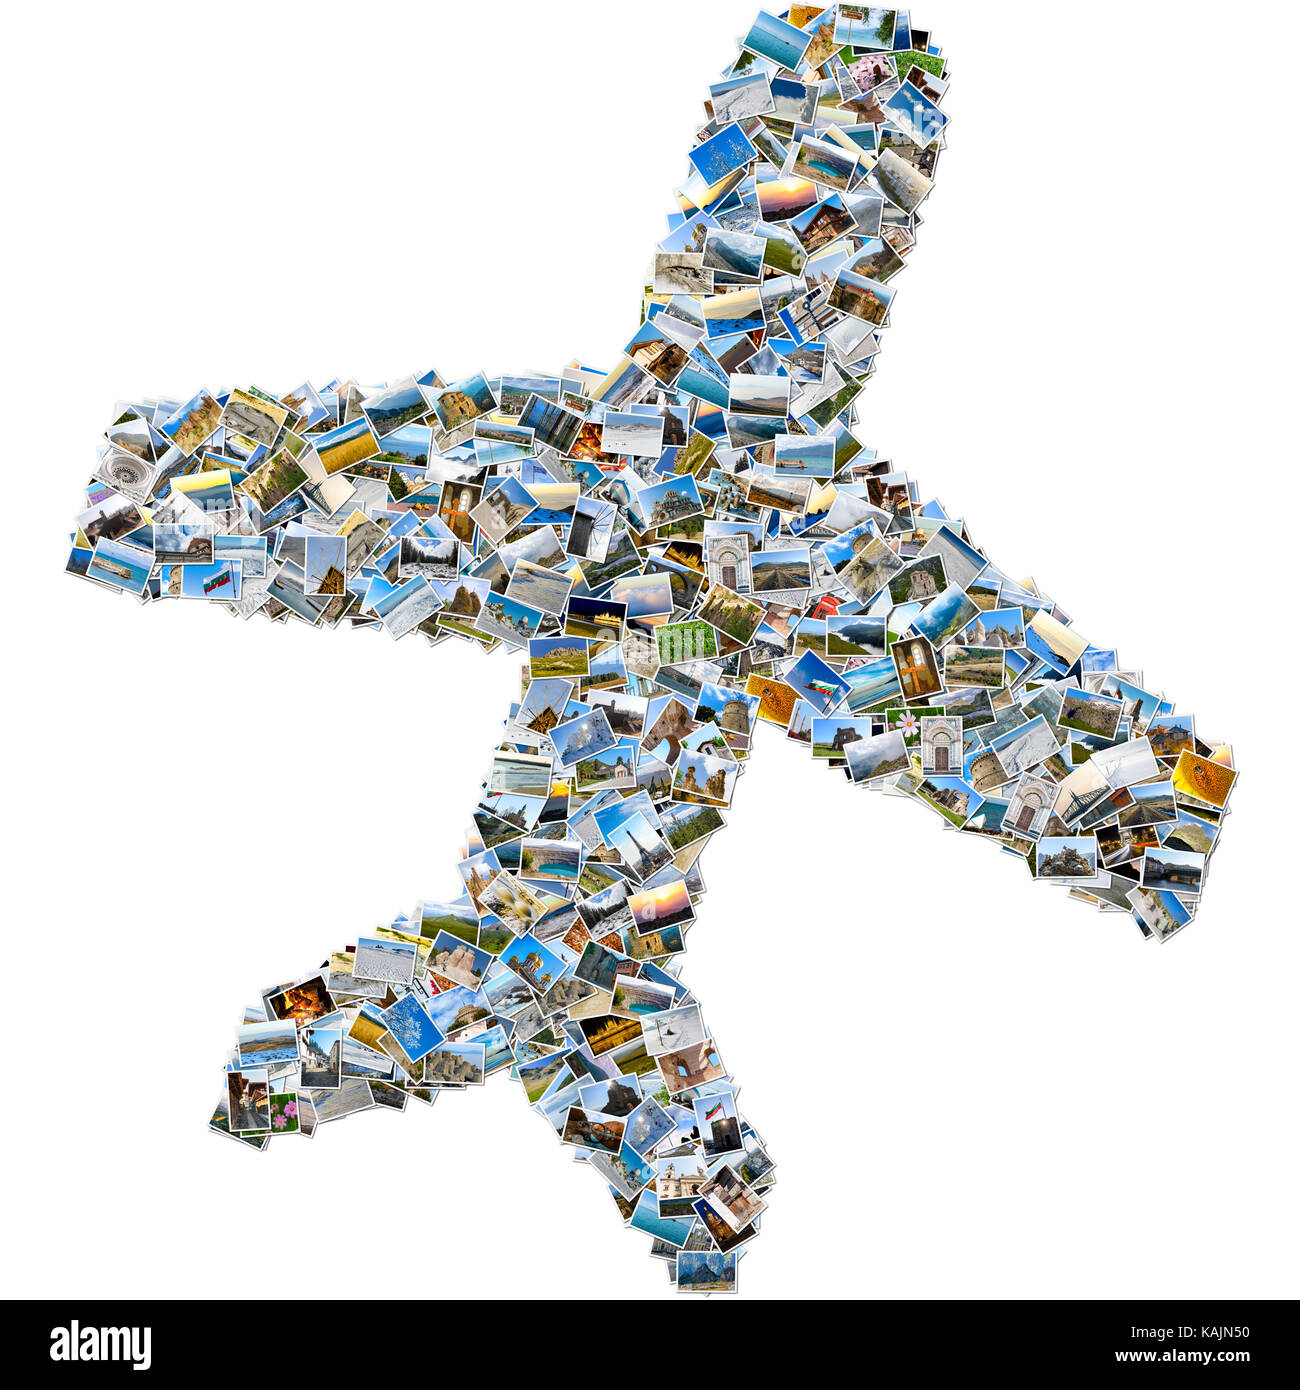 Photo Collage - simili a mosaico aereo realizzato a partire da immagini di viaggio salendo e isolato su sfondo bianco Foto Stock